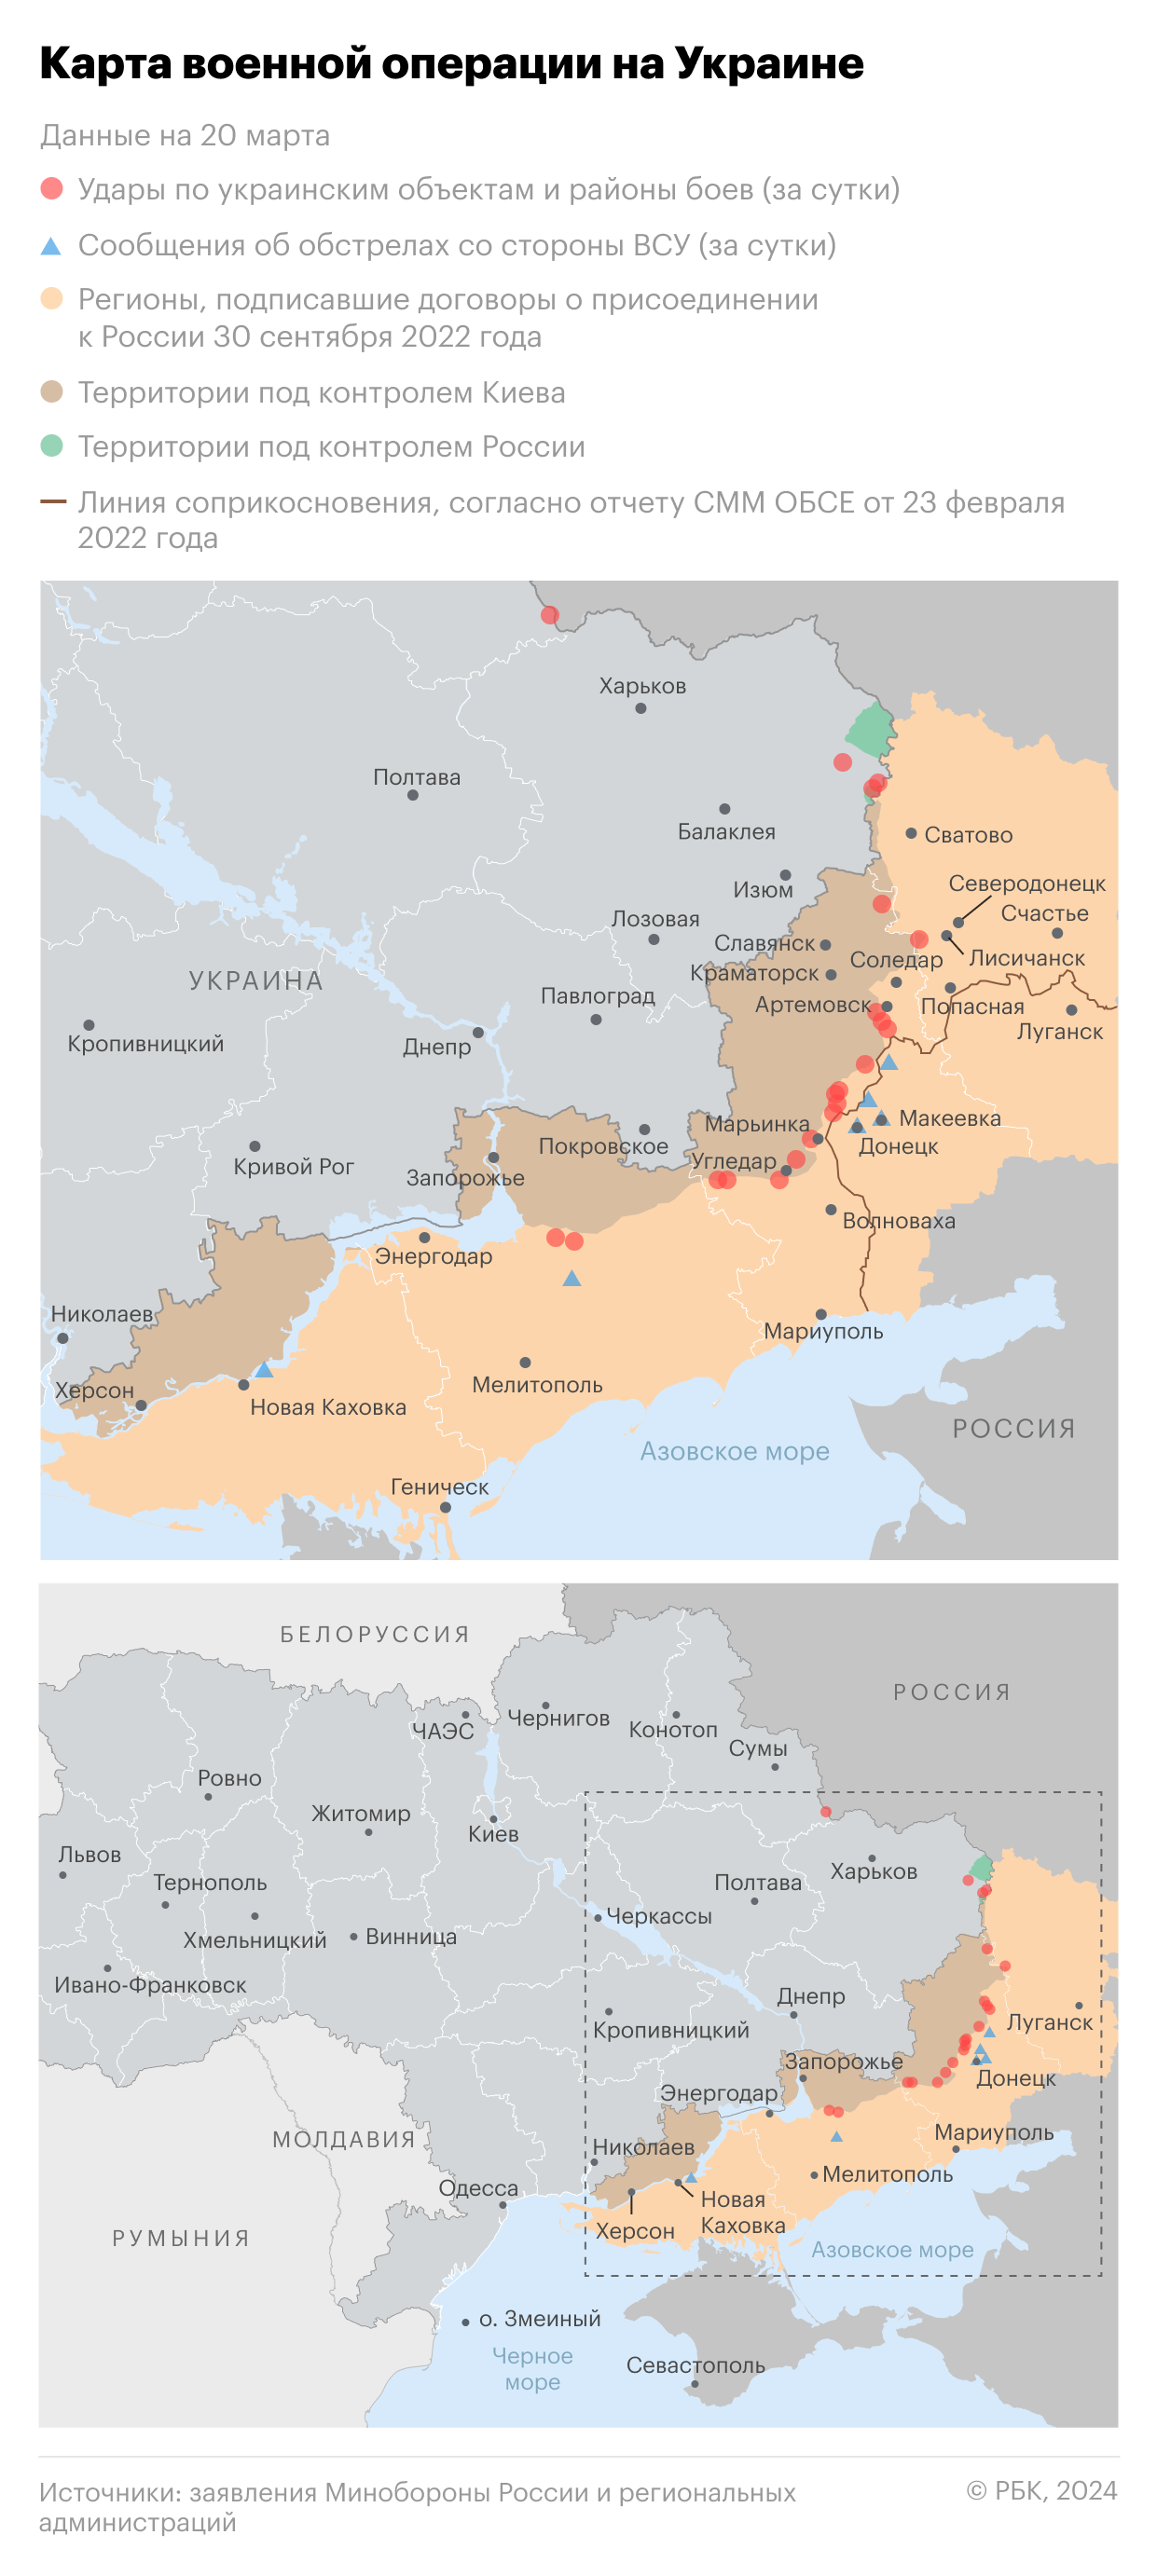 Военная операция на Украине. Карта на 20 марта